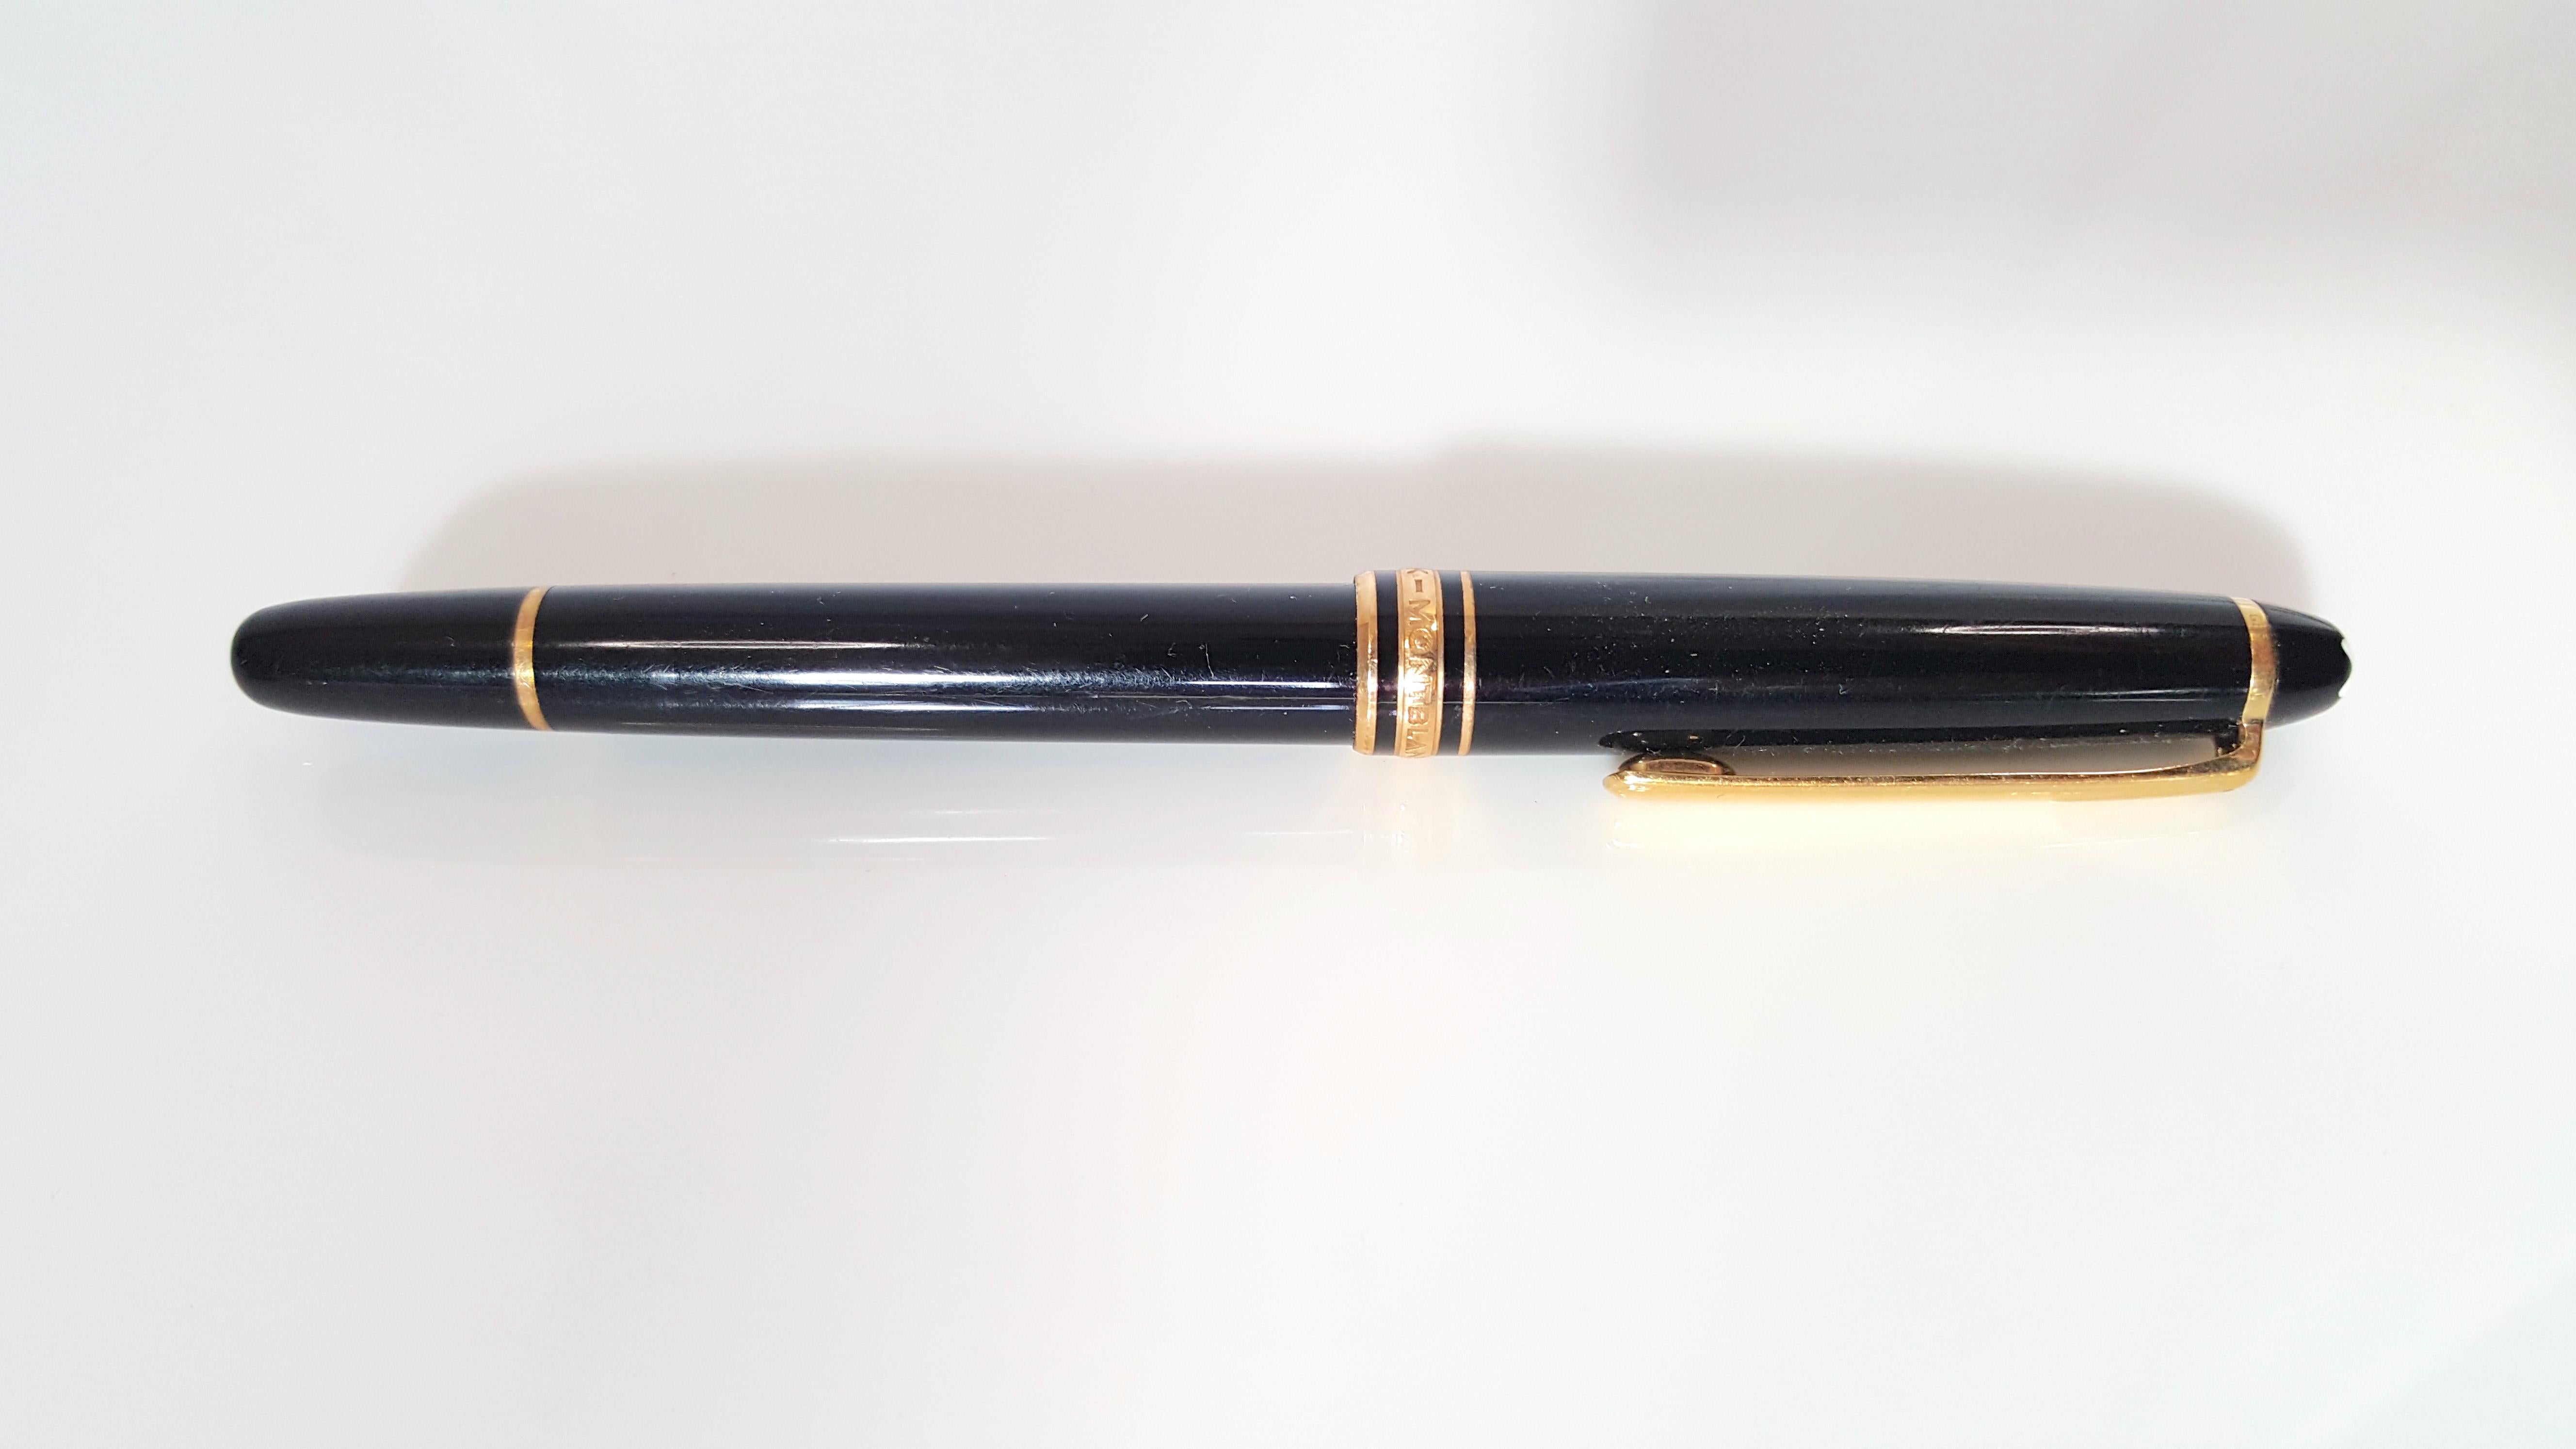 Instrument d'écriture le plus connu de toutes les collections Montblanc, ce Meisterstuck Classique est doté de six anneaux dorés et d'un clip sur le stylo rollerball en résine noire avec un capuchon amovible, un numéro de série unique, un anneau